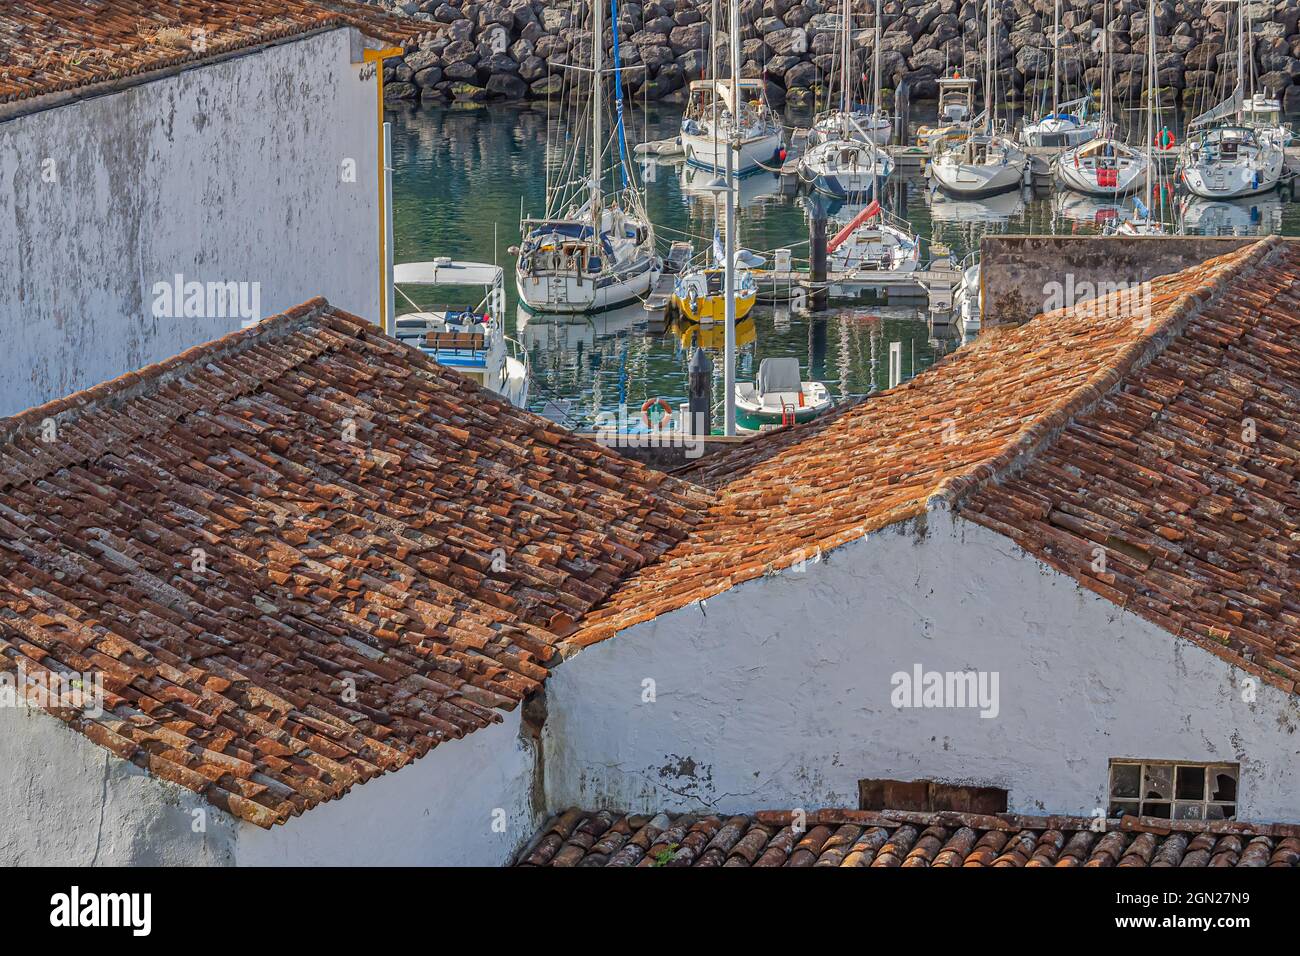 Les voiliers dans une marina abritée sont visibles au-delà des toits de tuiles rouges sur les anciens bâtiments de la ville historique d'Angra do Heroismo, Açores, Portugal. Banque D'Images